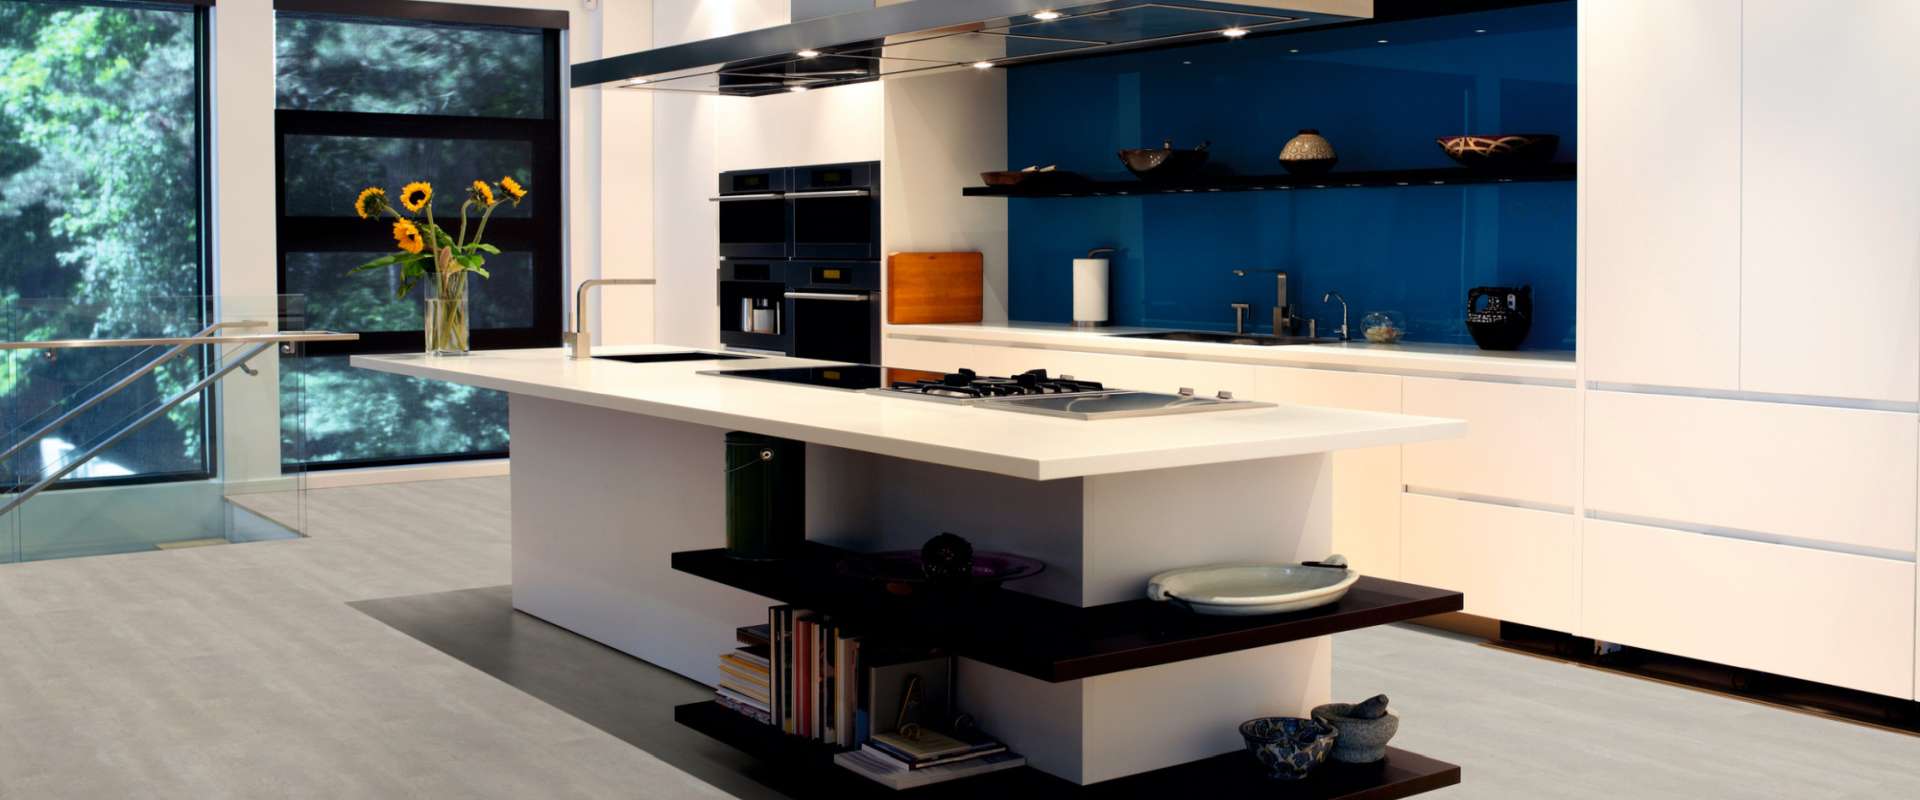 Bild Designboden marmoriert Küche